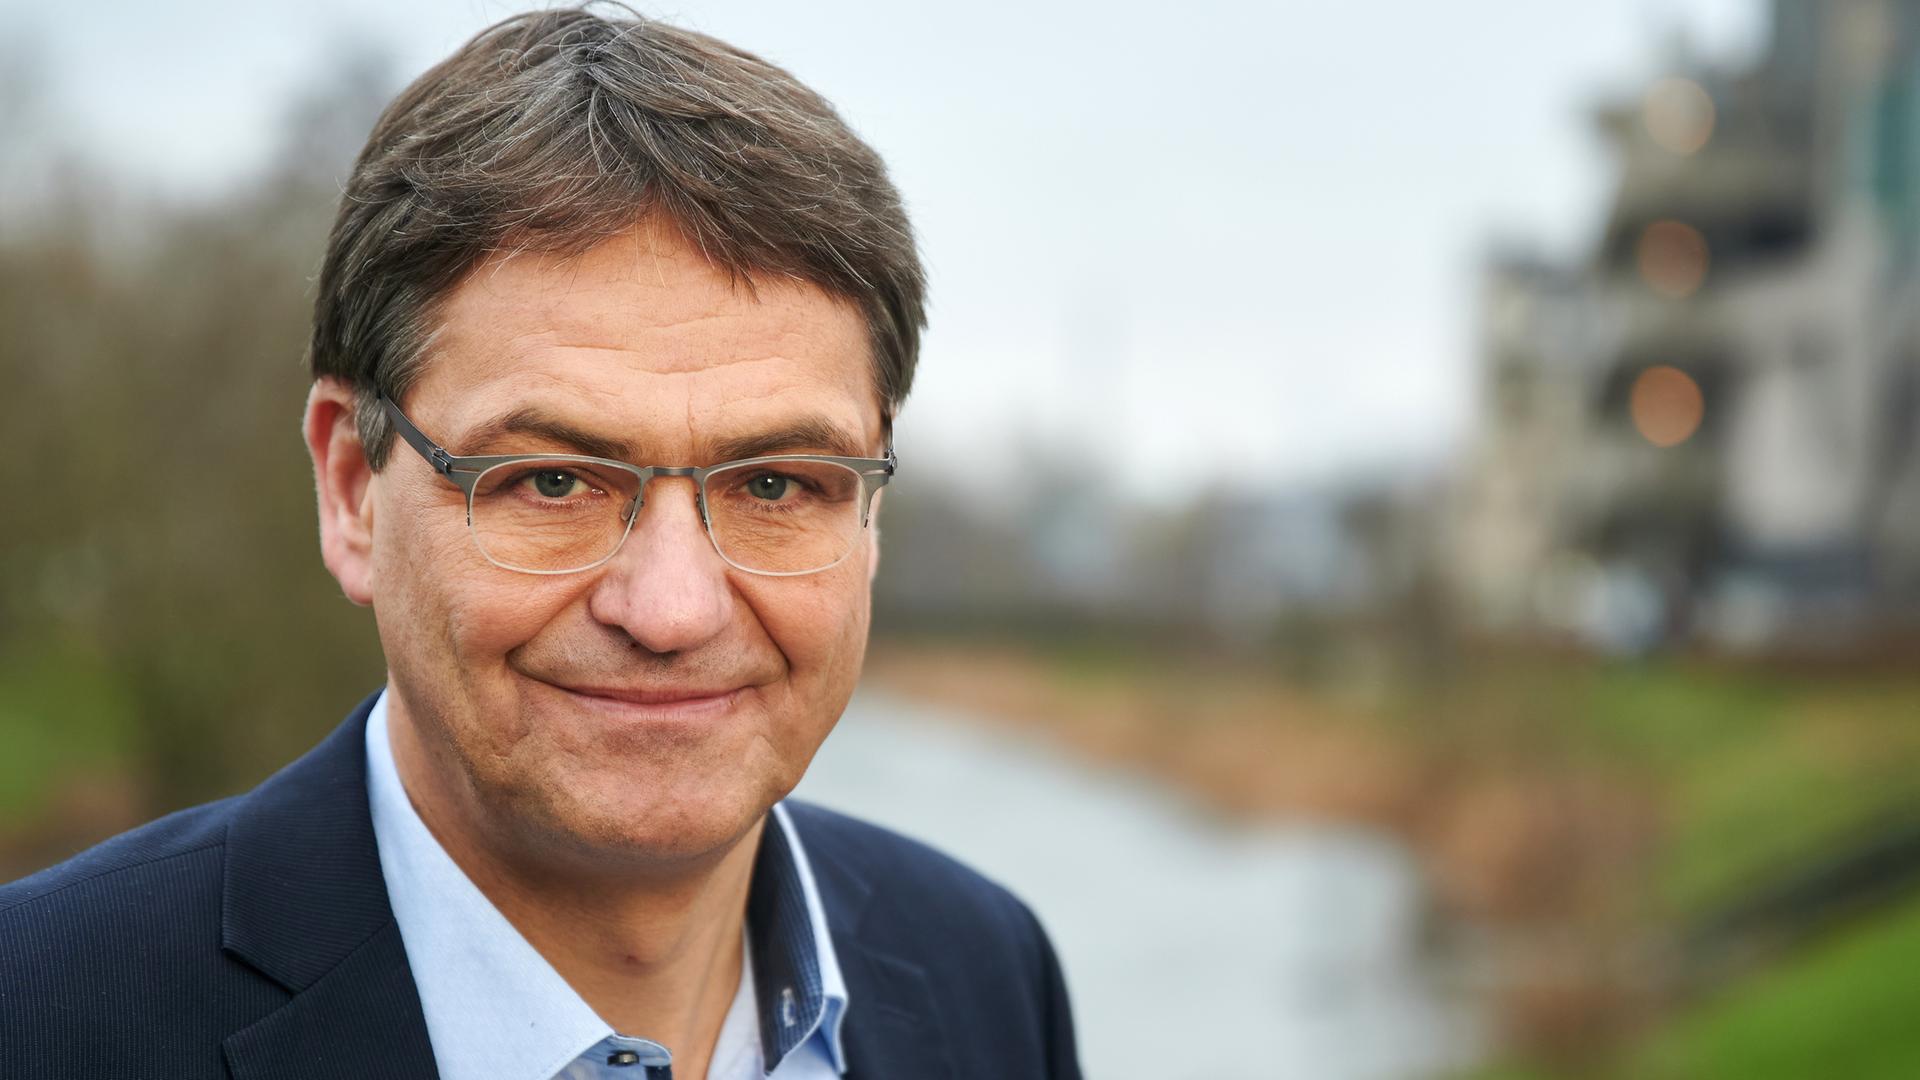 Peter Liese (CDU), EU-Abgeordneter und gesundheitspolitischer Sprecher der EVP-Fraktion im EU-Parlament, aufgenommen am Ufer der Ruhr